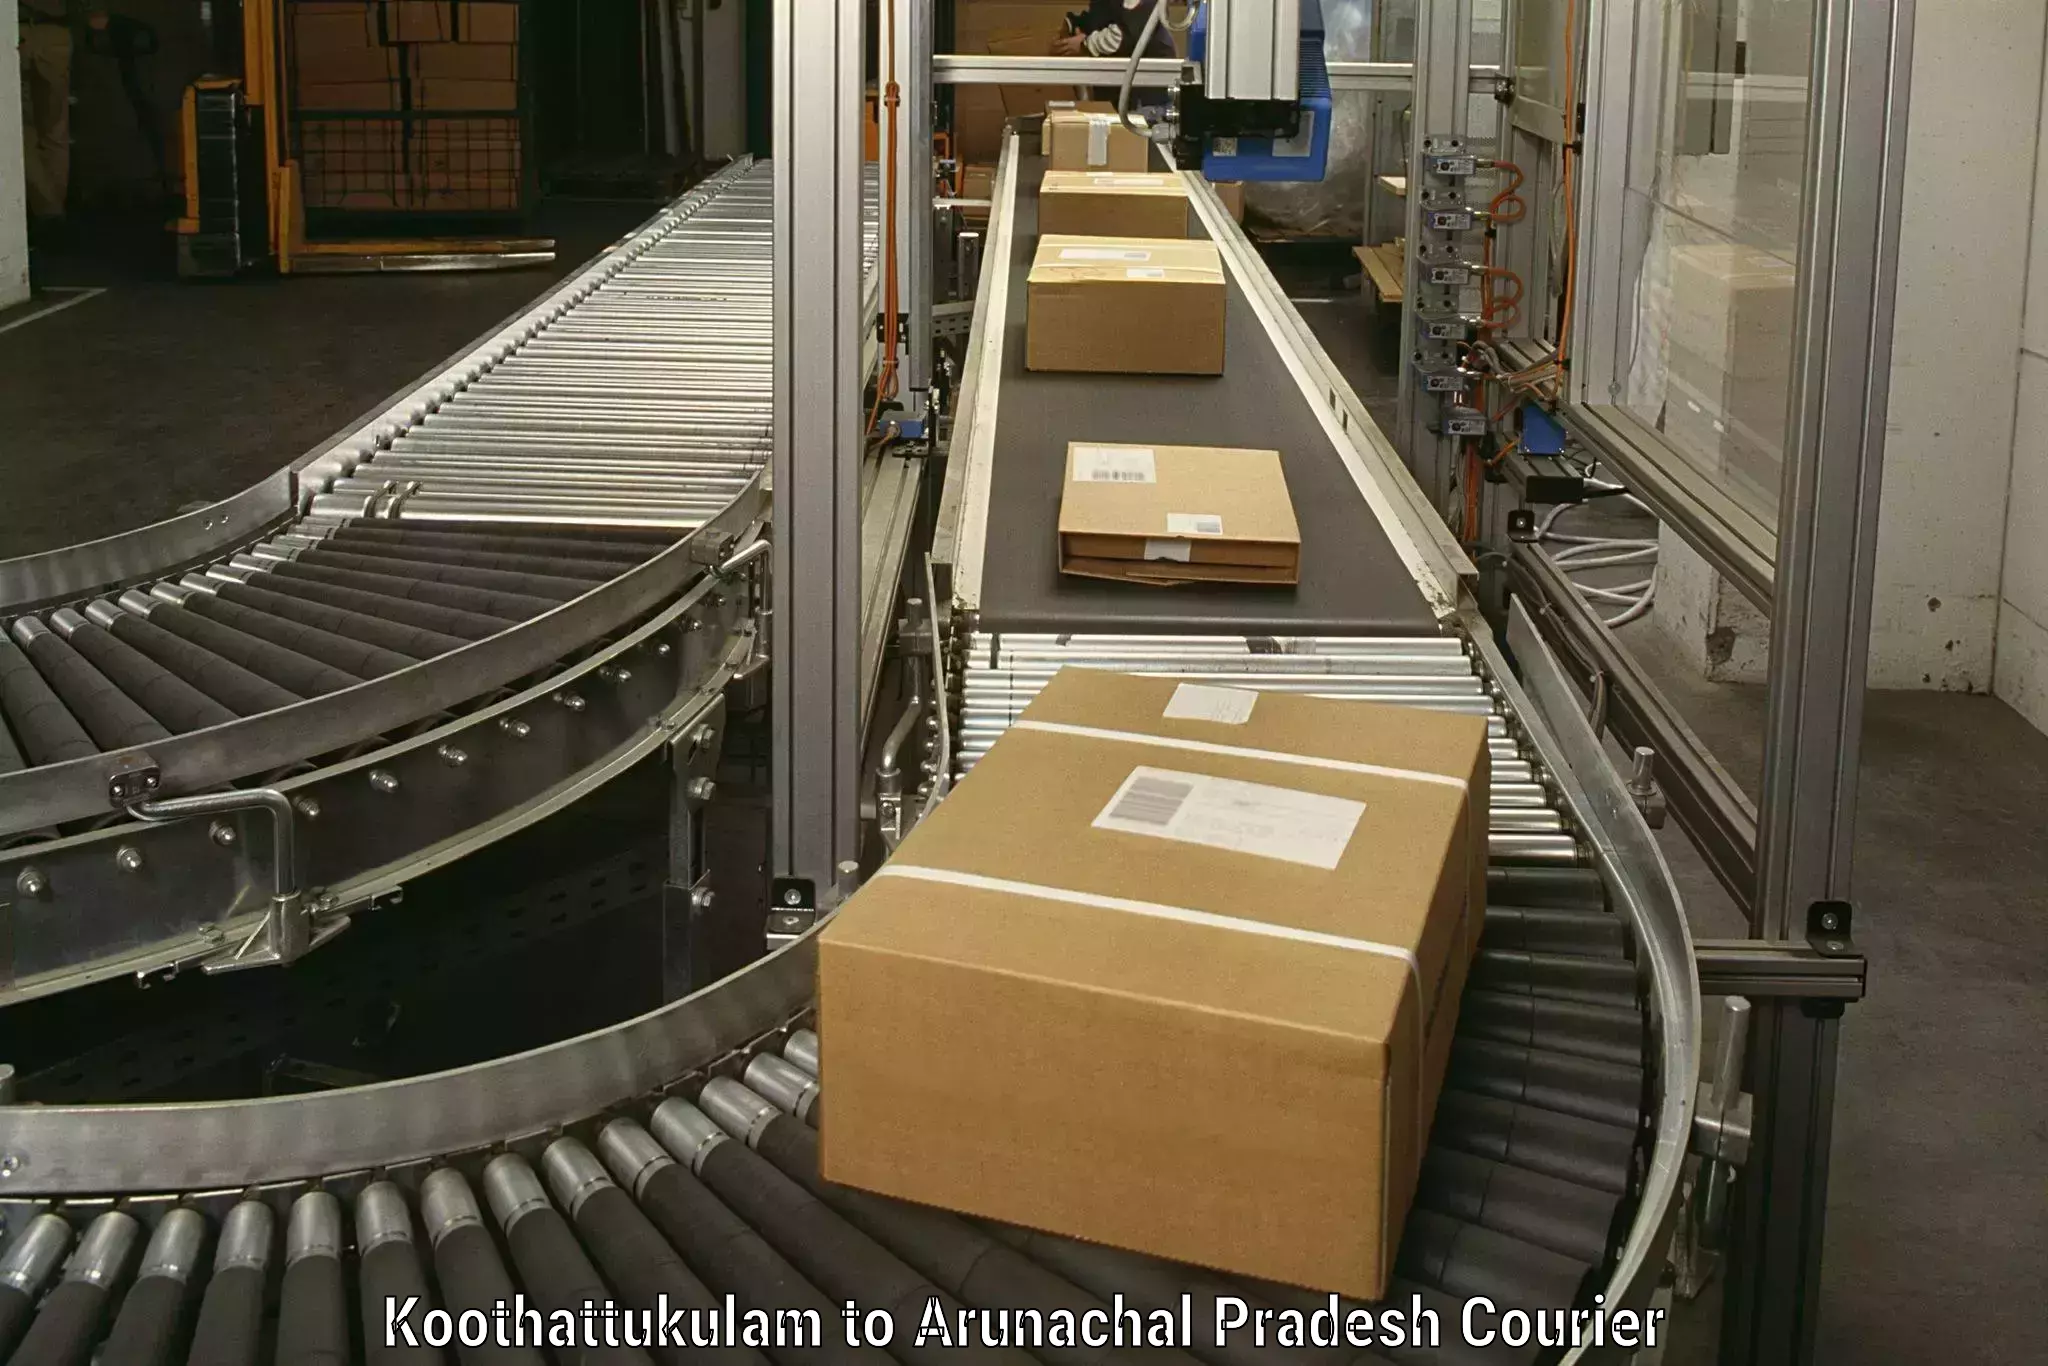 Efficient household movers Koothattukulam to Nirjuli